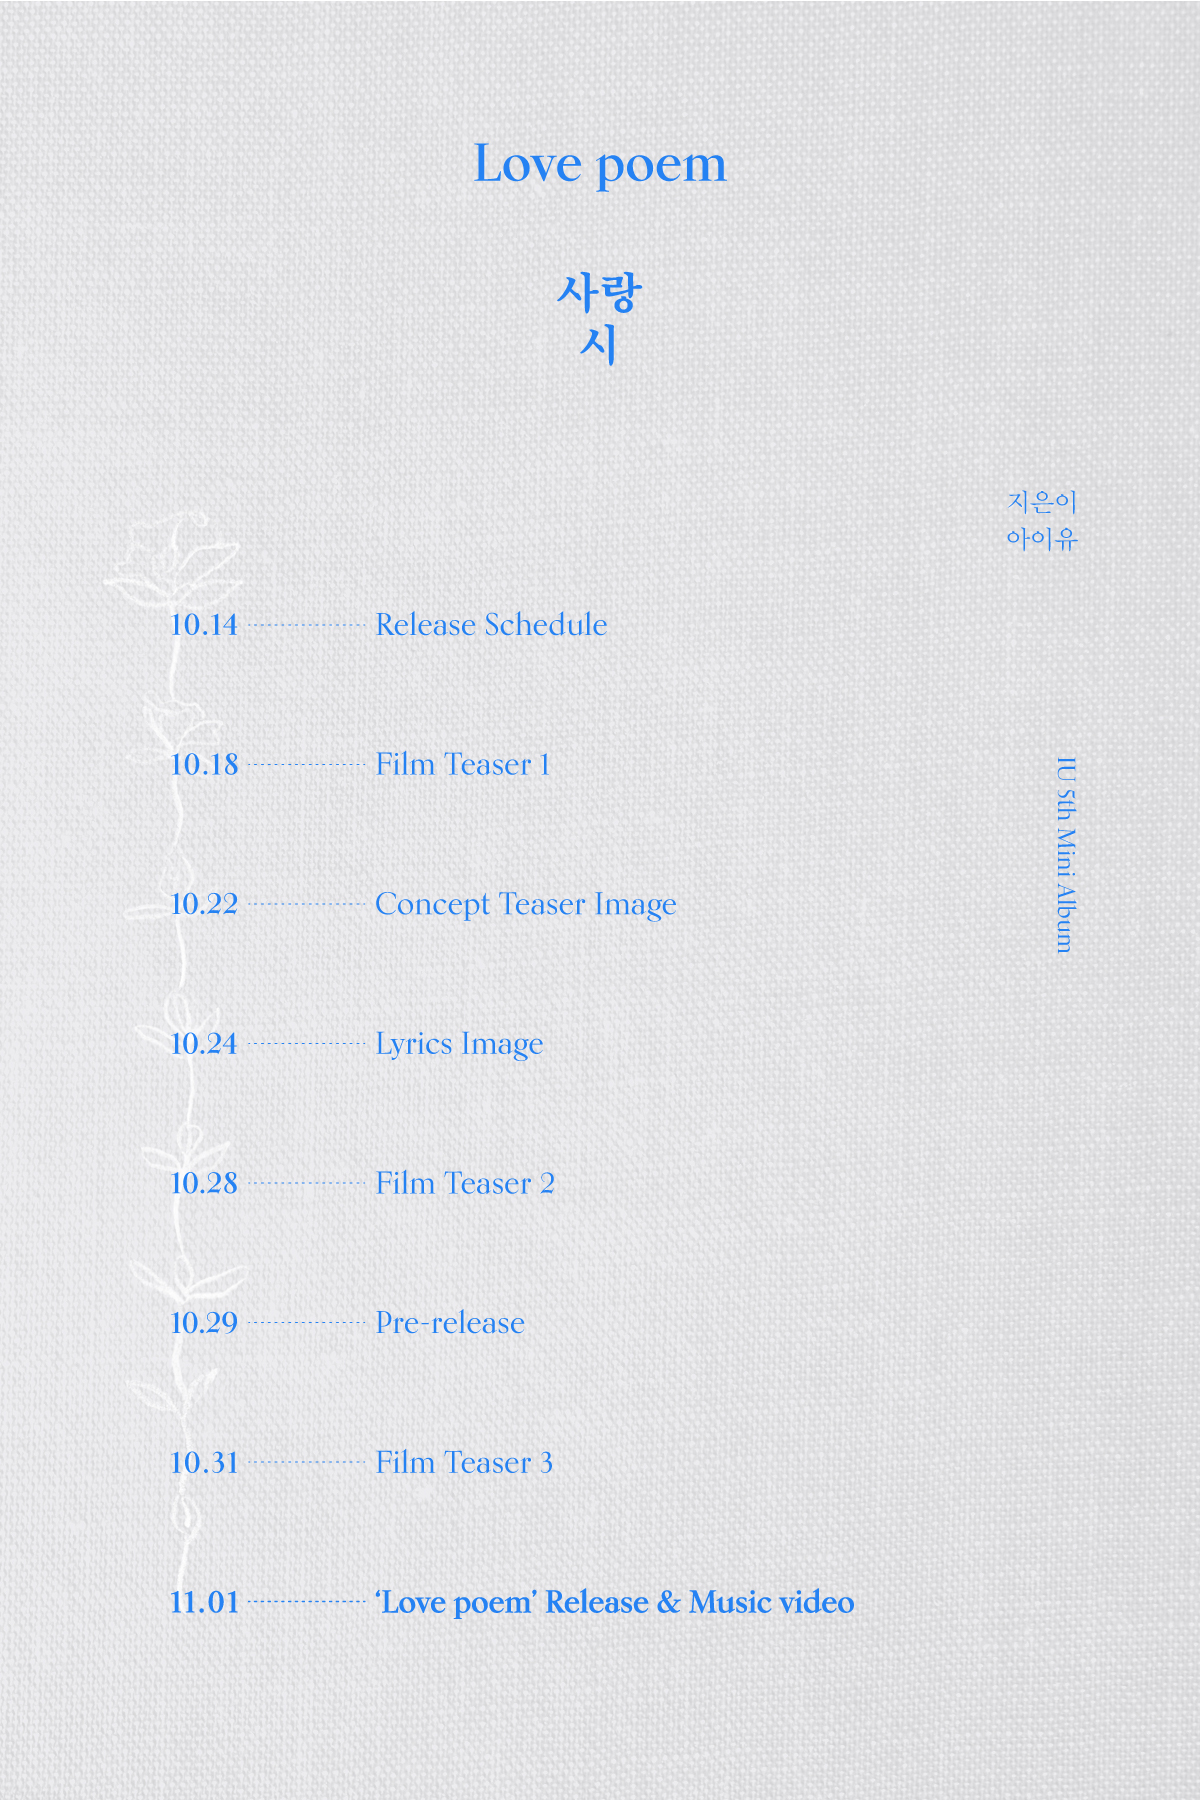 IU_ Release Schedule 이미지.jpg